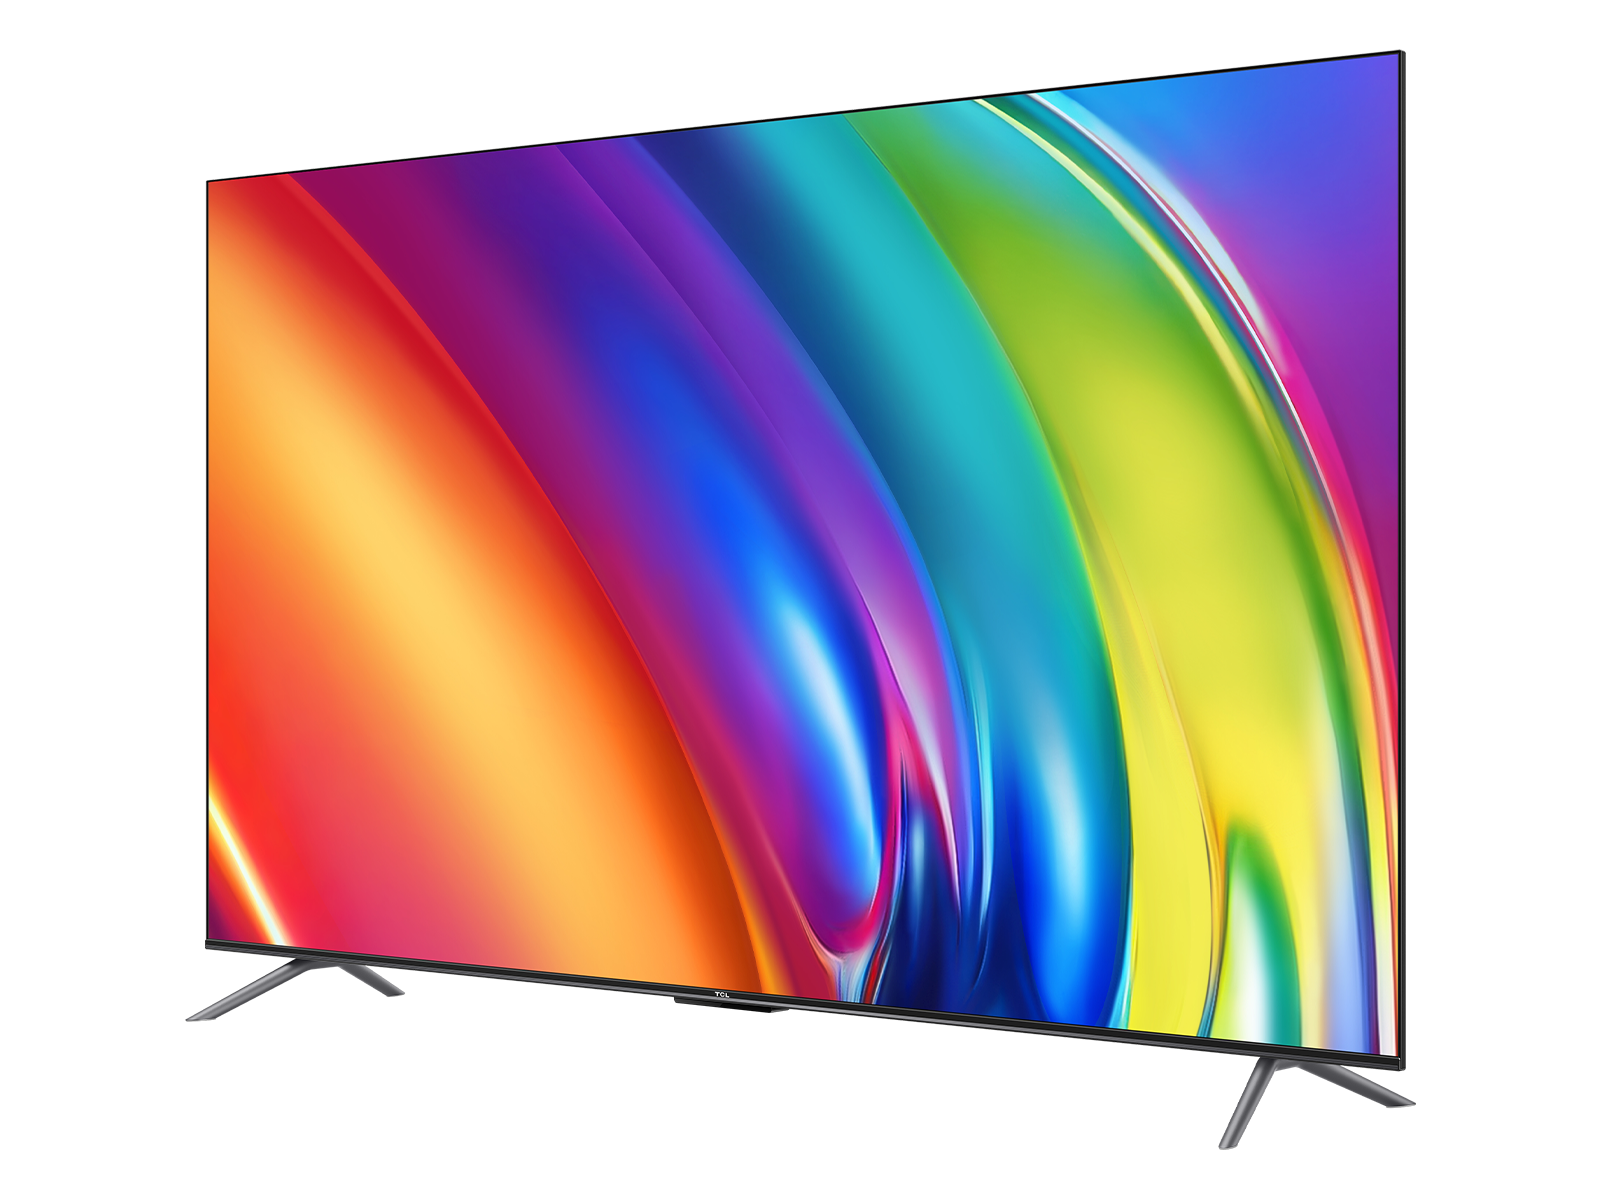 75″ P745 4K Ultra HD Google TV - Model 75P745